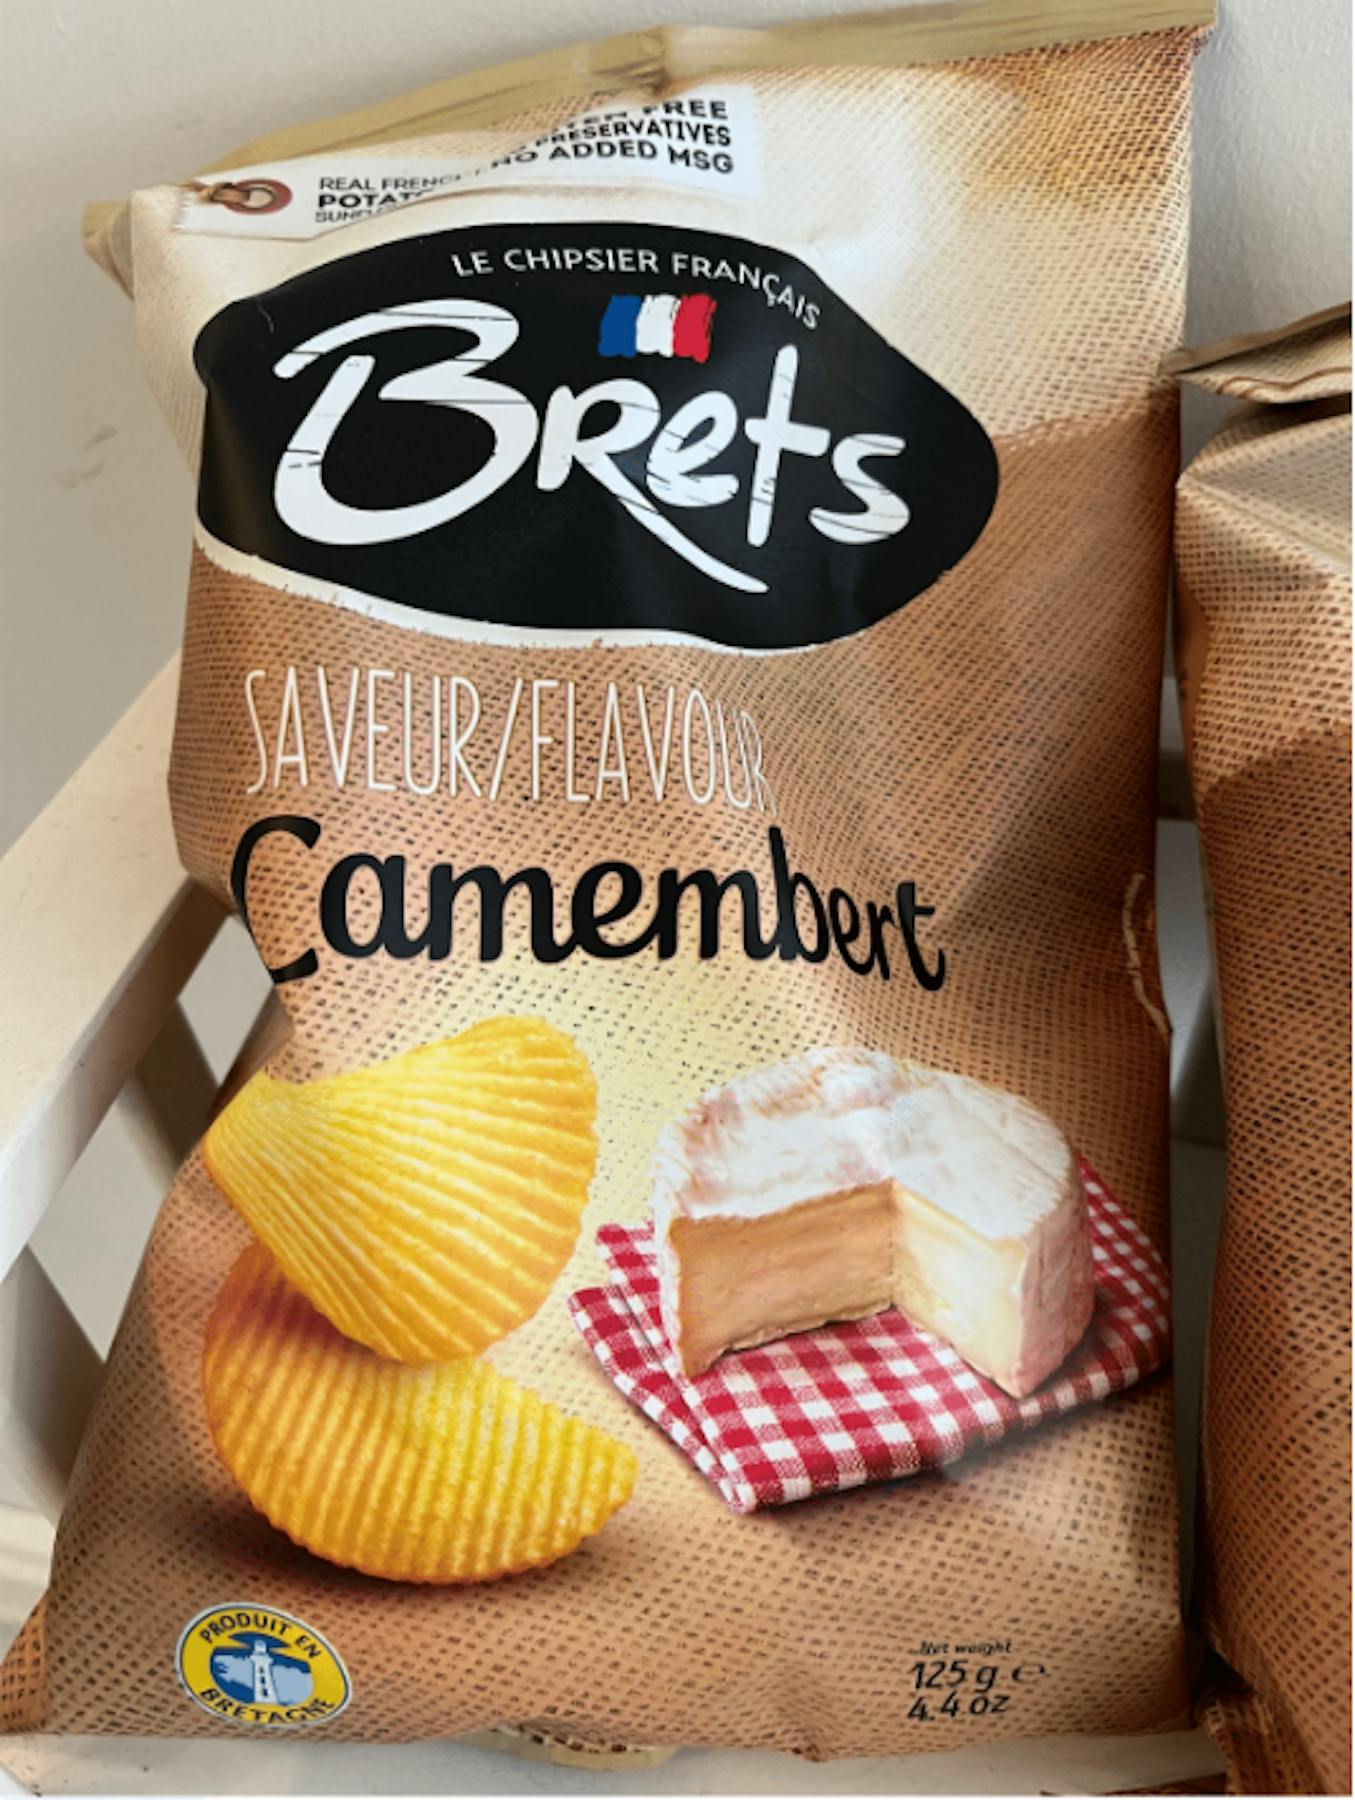 Savourez la Bretagne - Chips Bret's ondulées saveur marine